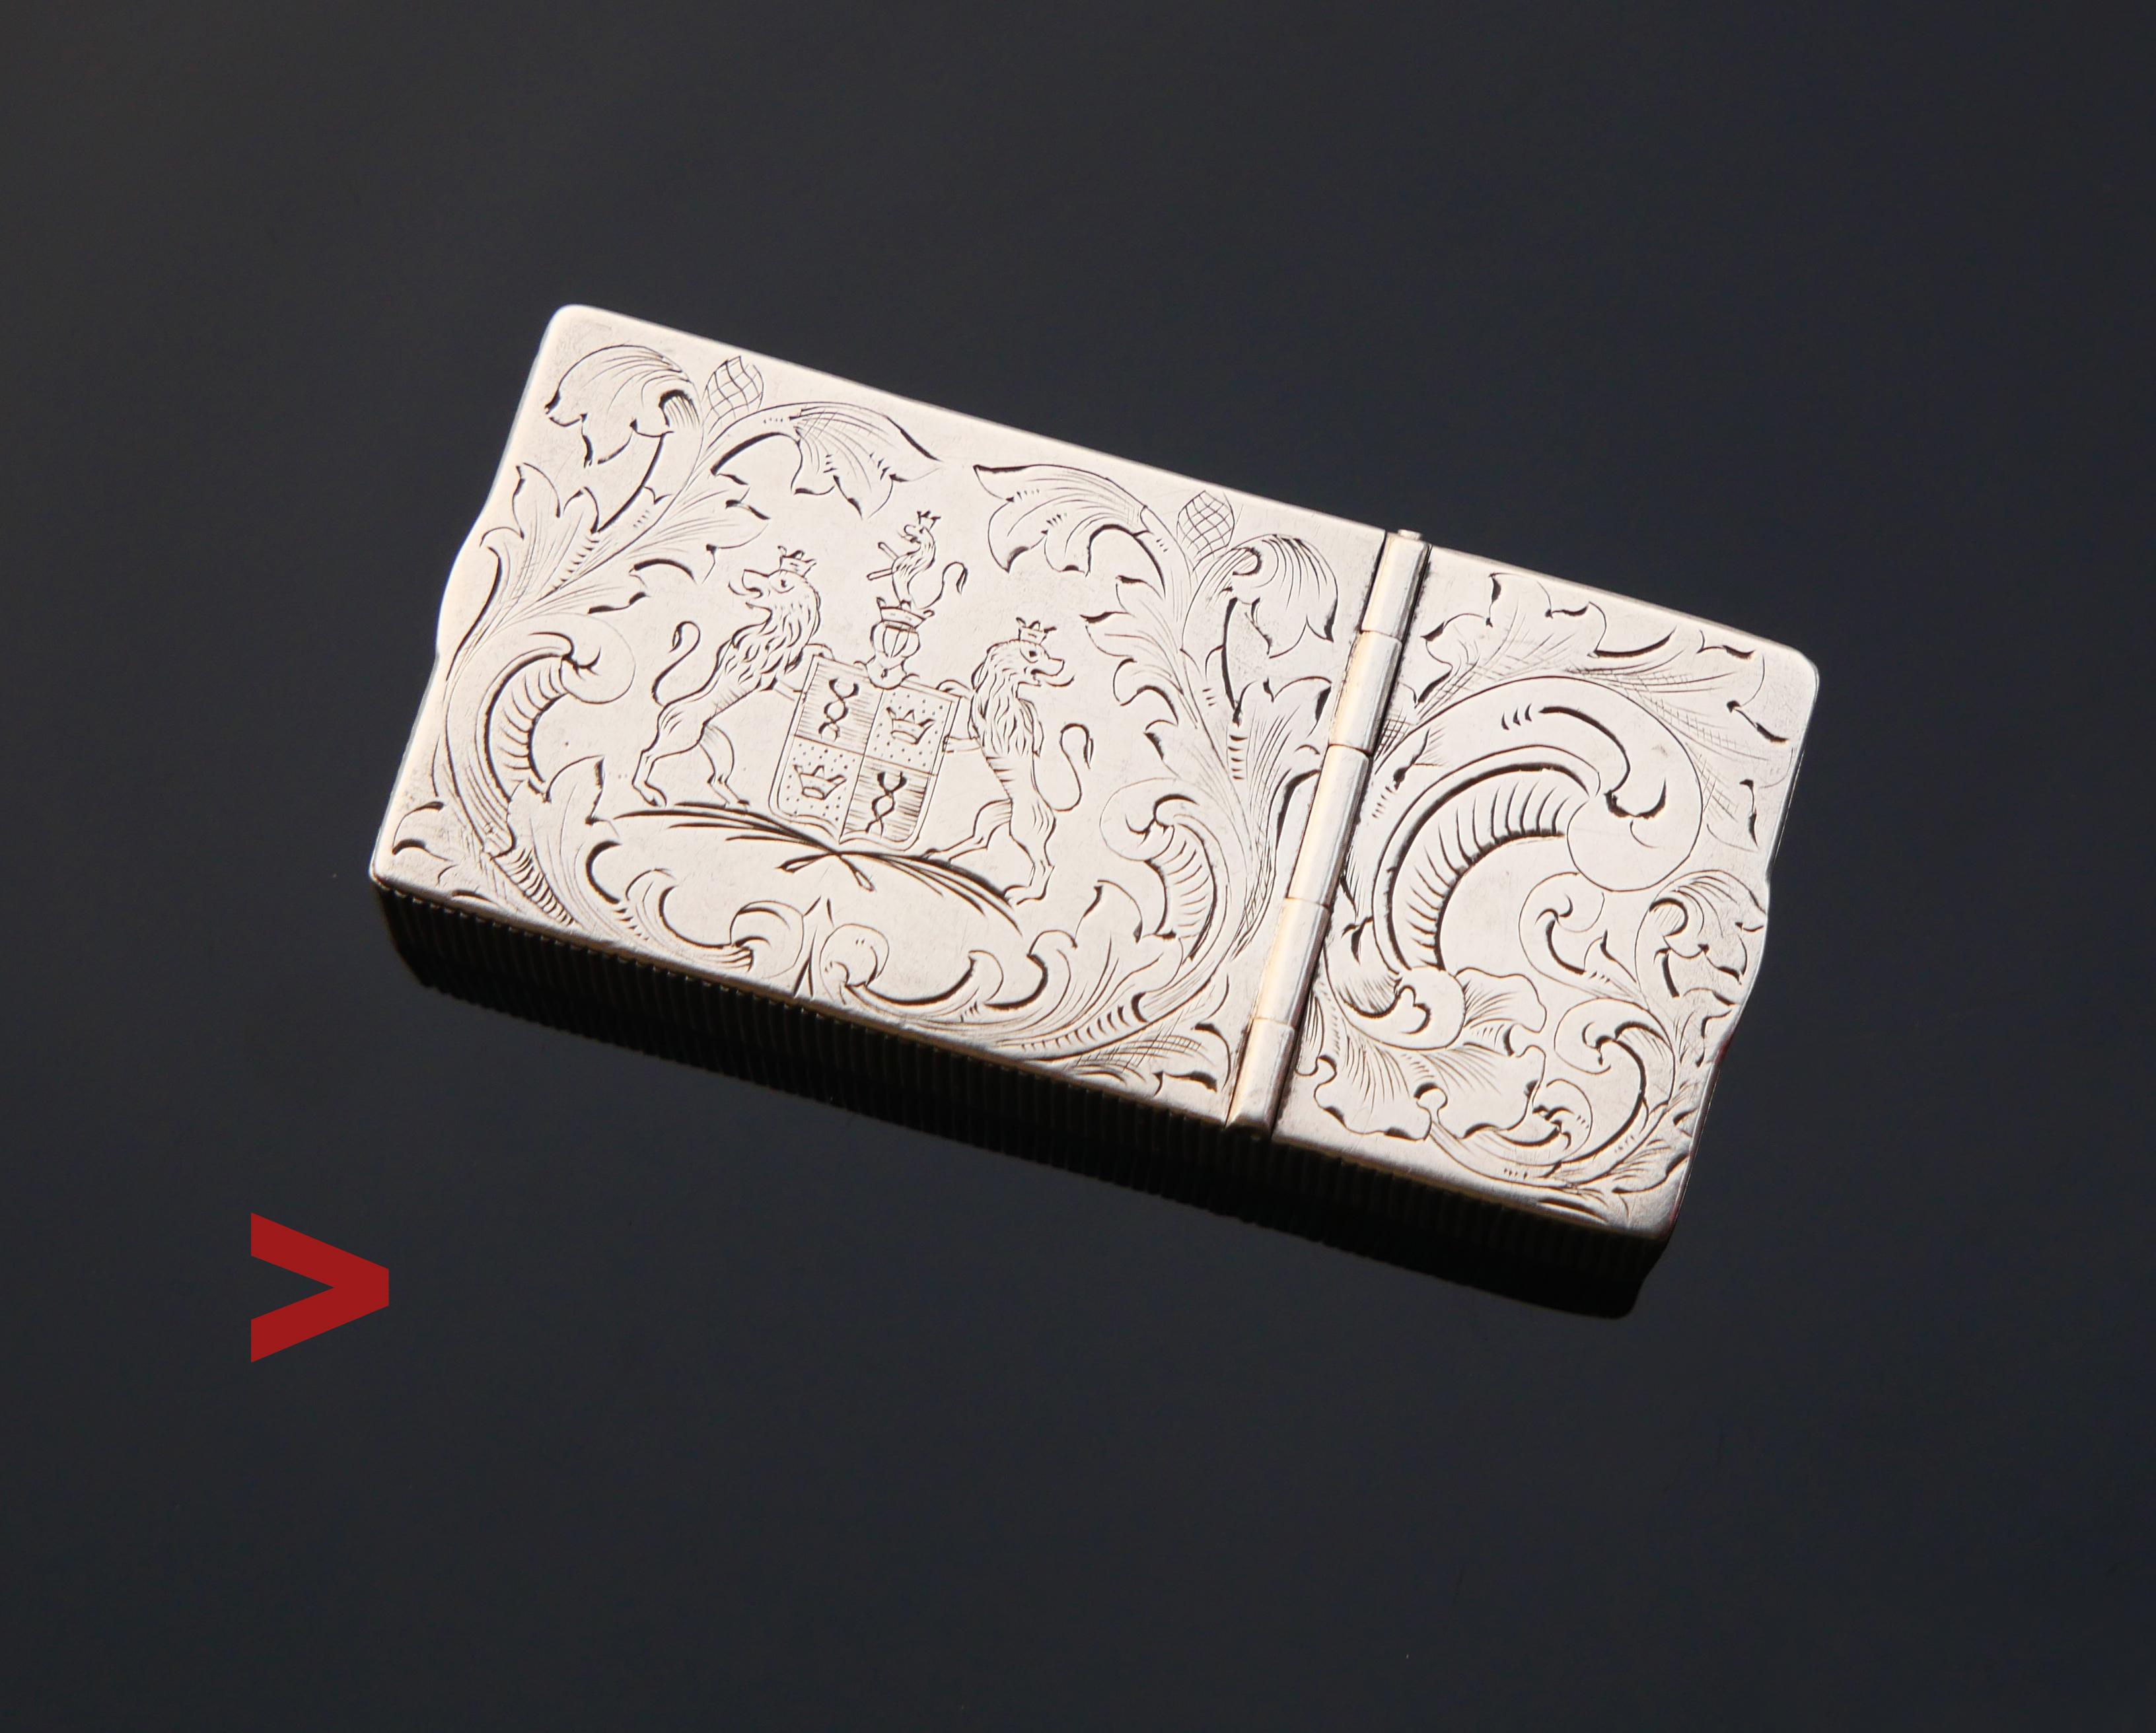 Original russische kaiserliche Silberdose aus der Werkstatt von K.Faberge ca. Anfang des XX Jahrhunderts

Ich vermute, dass es sich bei dieser Schachtel um eine Art Pille, Gewürz, Schnupftabak oder Muskatnuss handeln kann.

Zwei separate